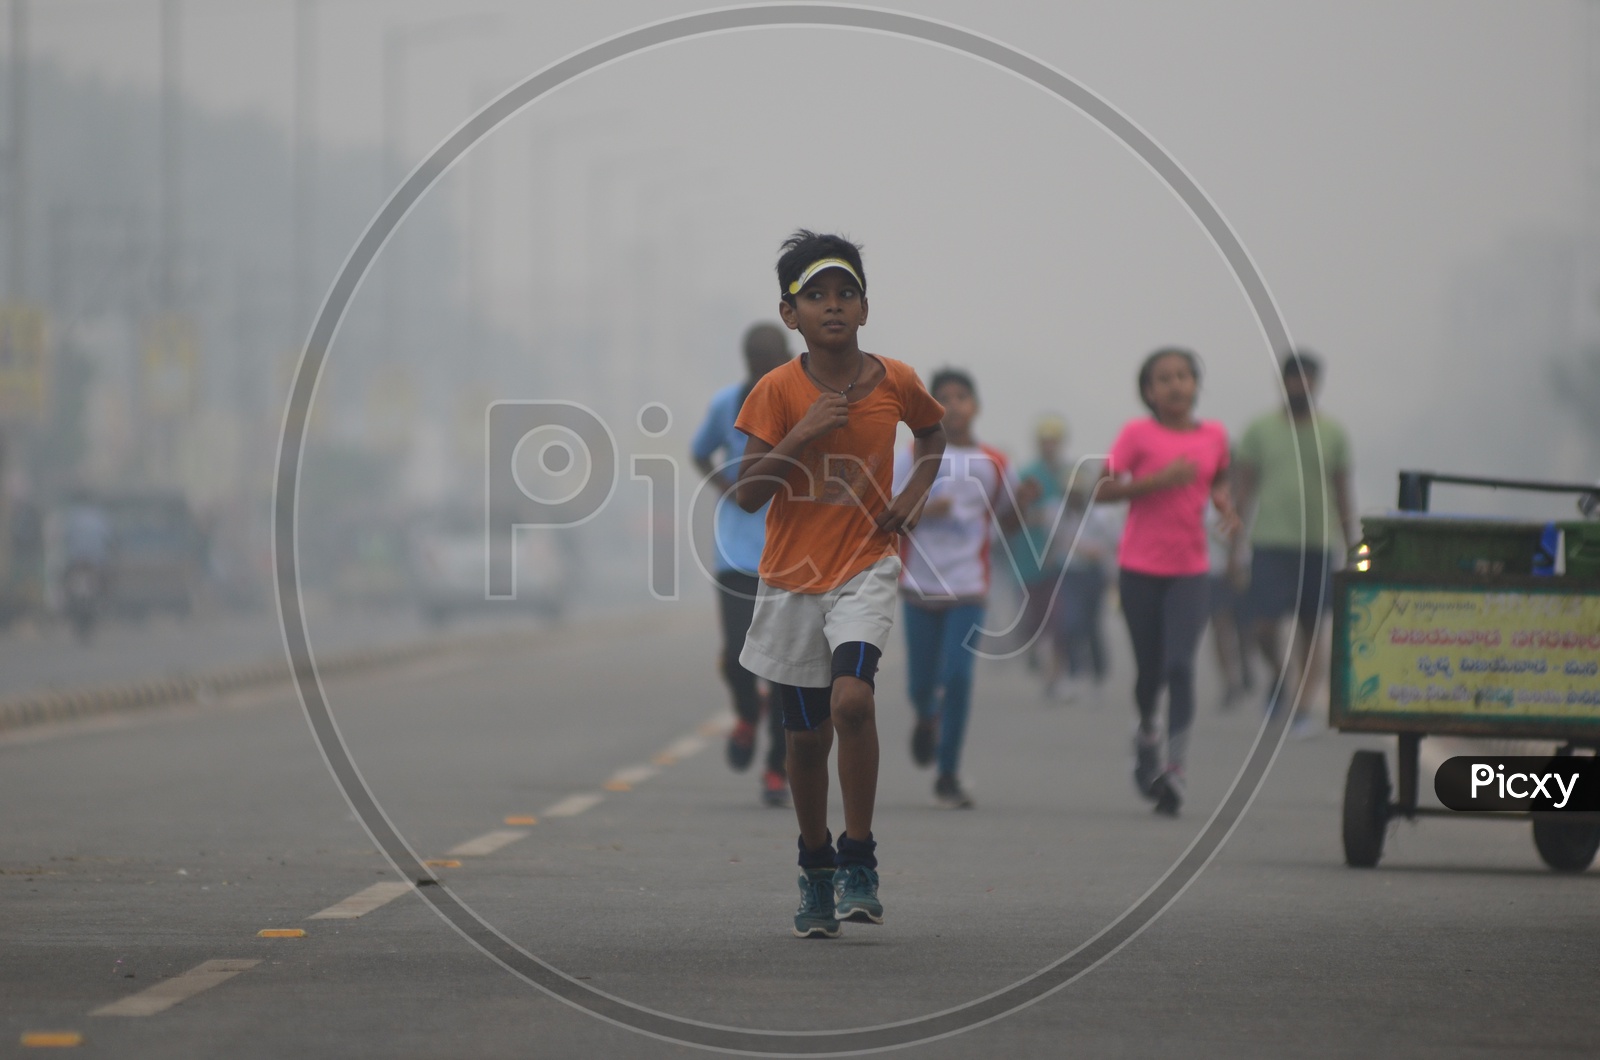 Janmabhoomi 5k run 2019